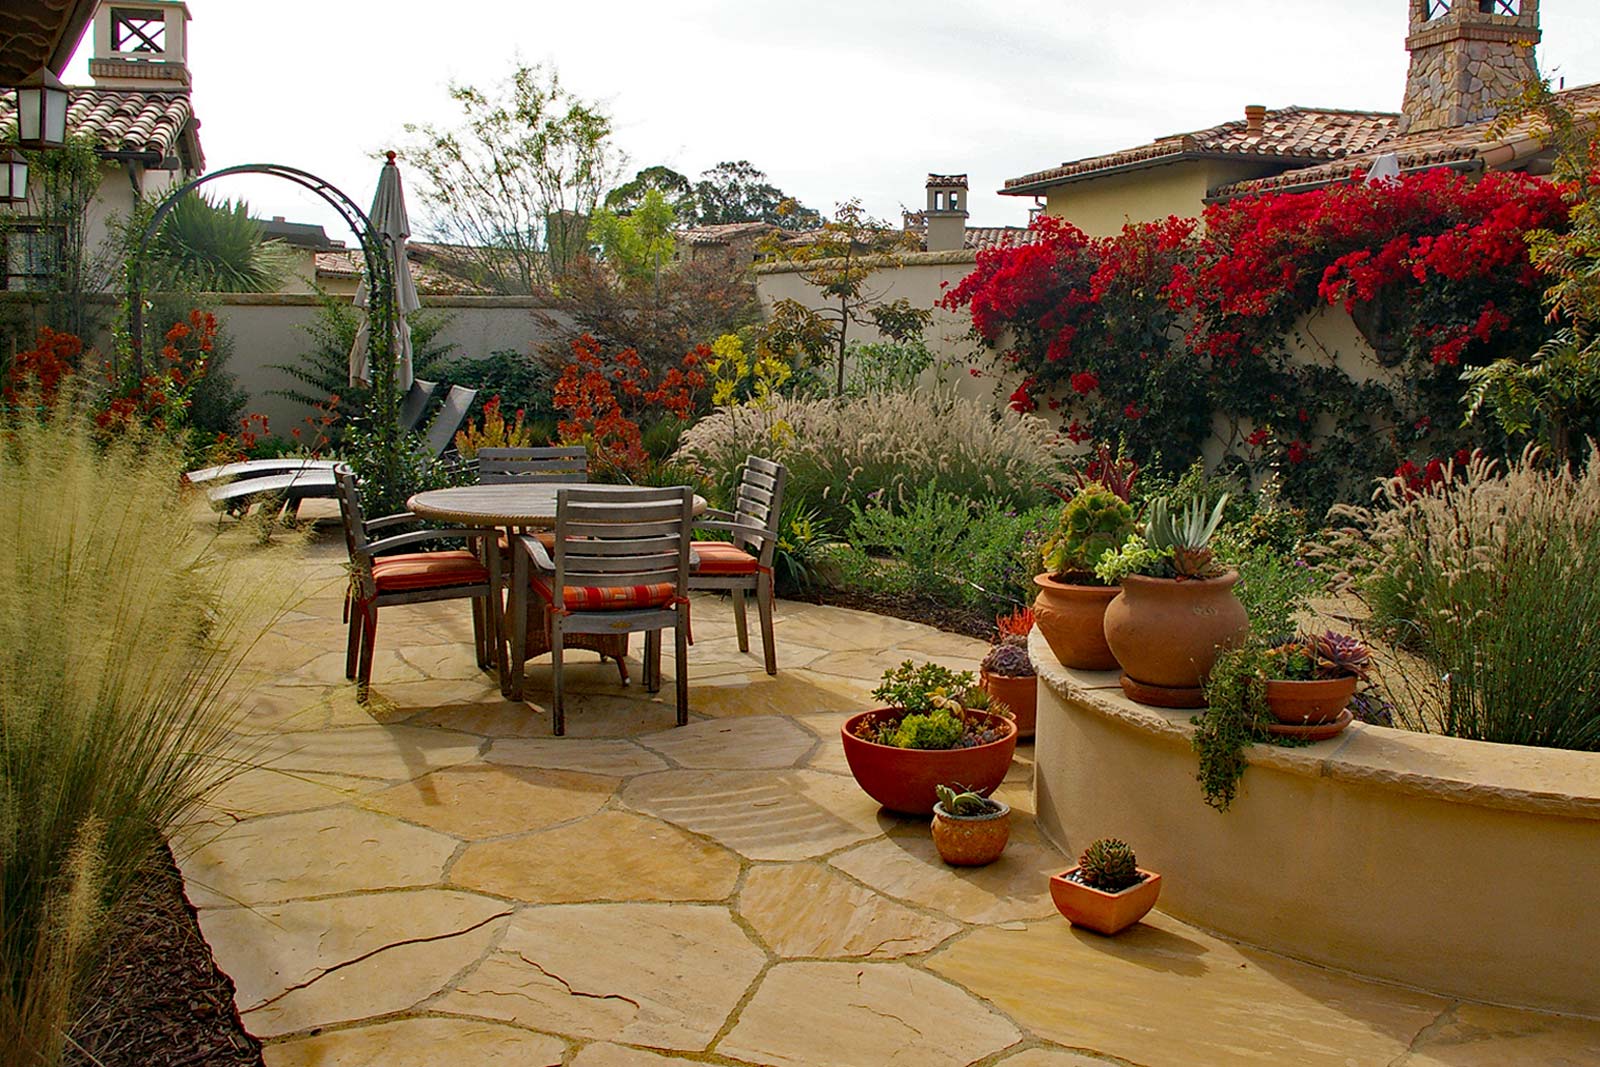 Santa Barbara Style Garden - Santa Barbara Garden Design - Joan S Bolton